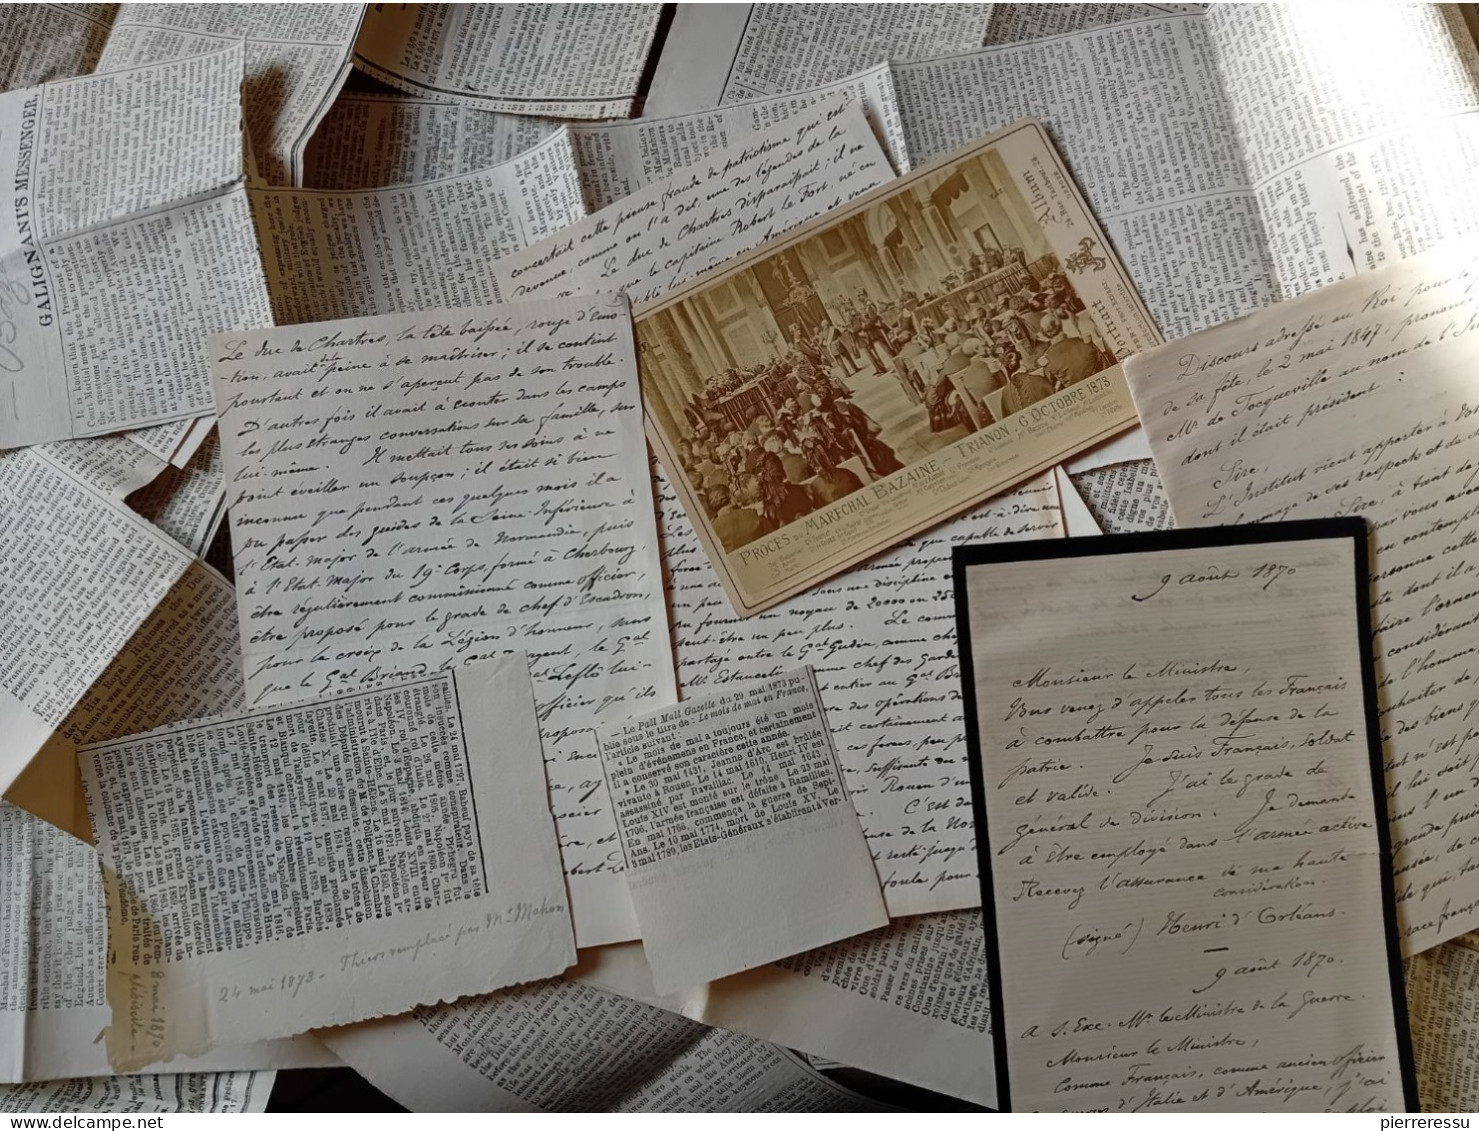 PHOTO APPERT A PARIS PROCES MARECHAL BAZAINE MANUSCRITS DUC D AUMALE ? DIVERSES COUPURES DE JOURNAUX TRIANON 1873 - Historical Documents